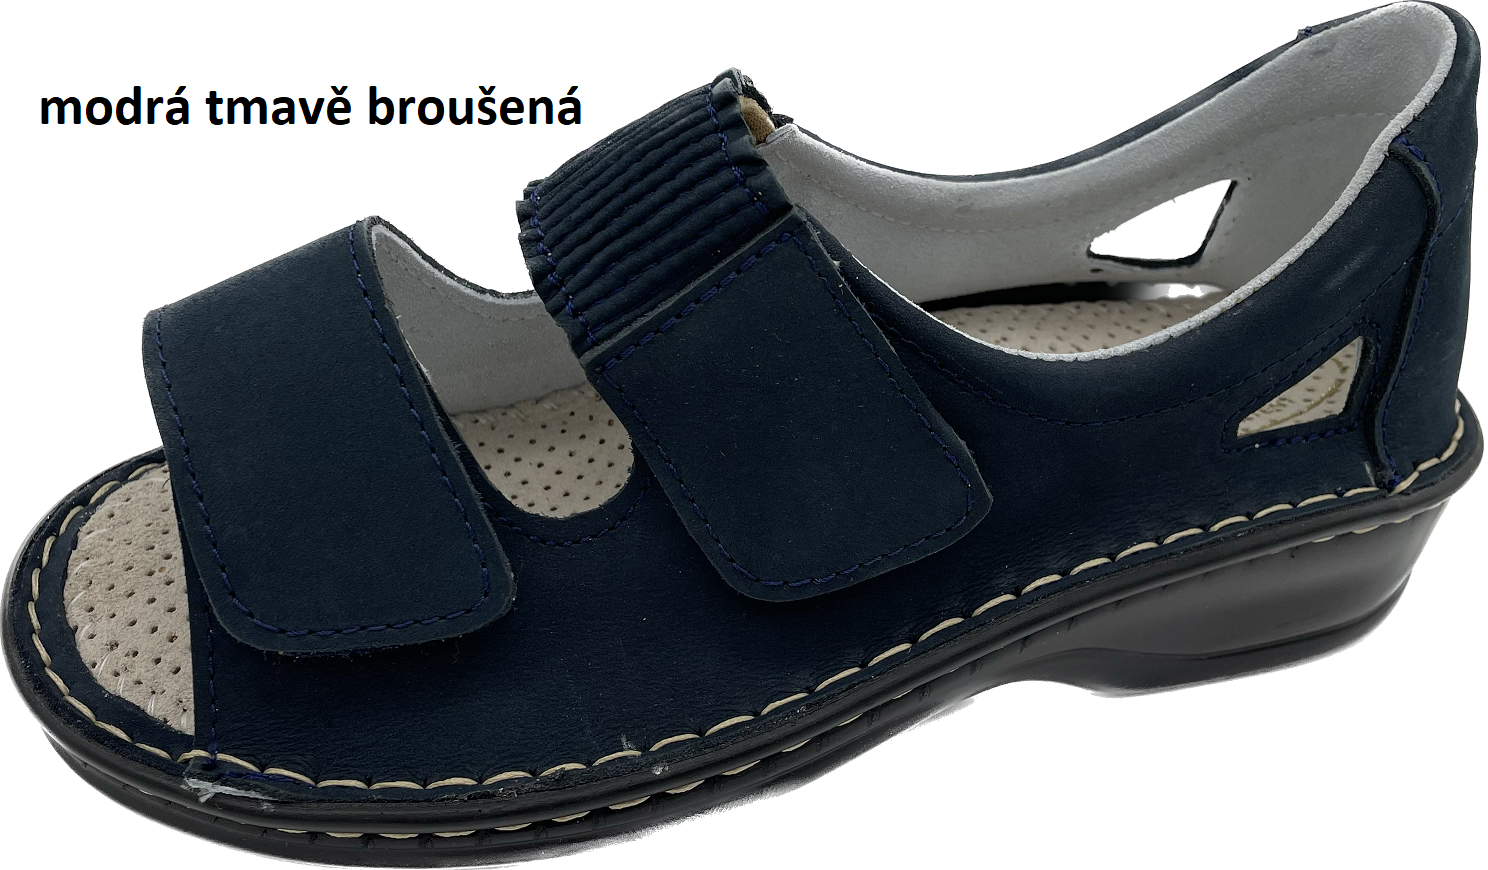 Boty Hanák vzor 306 - černá podešev Barva usně: modrá tmavě broušená, Velikosti obuvi: 36